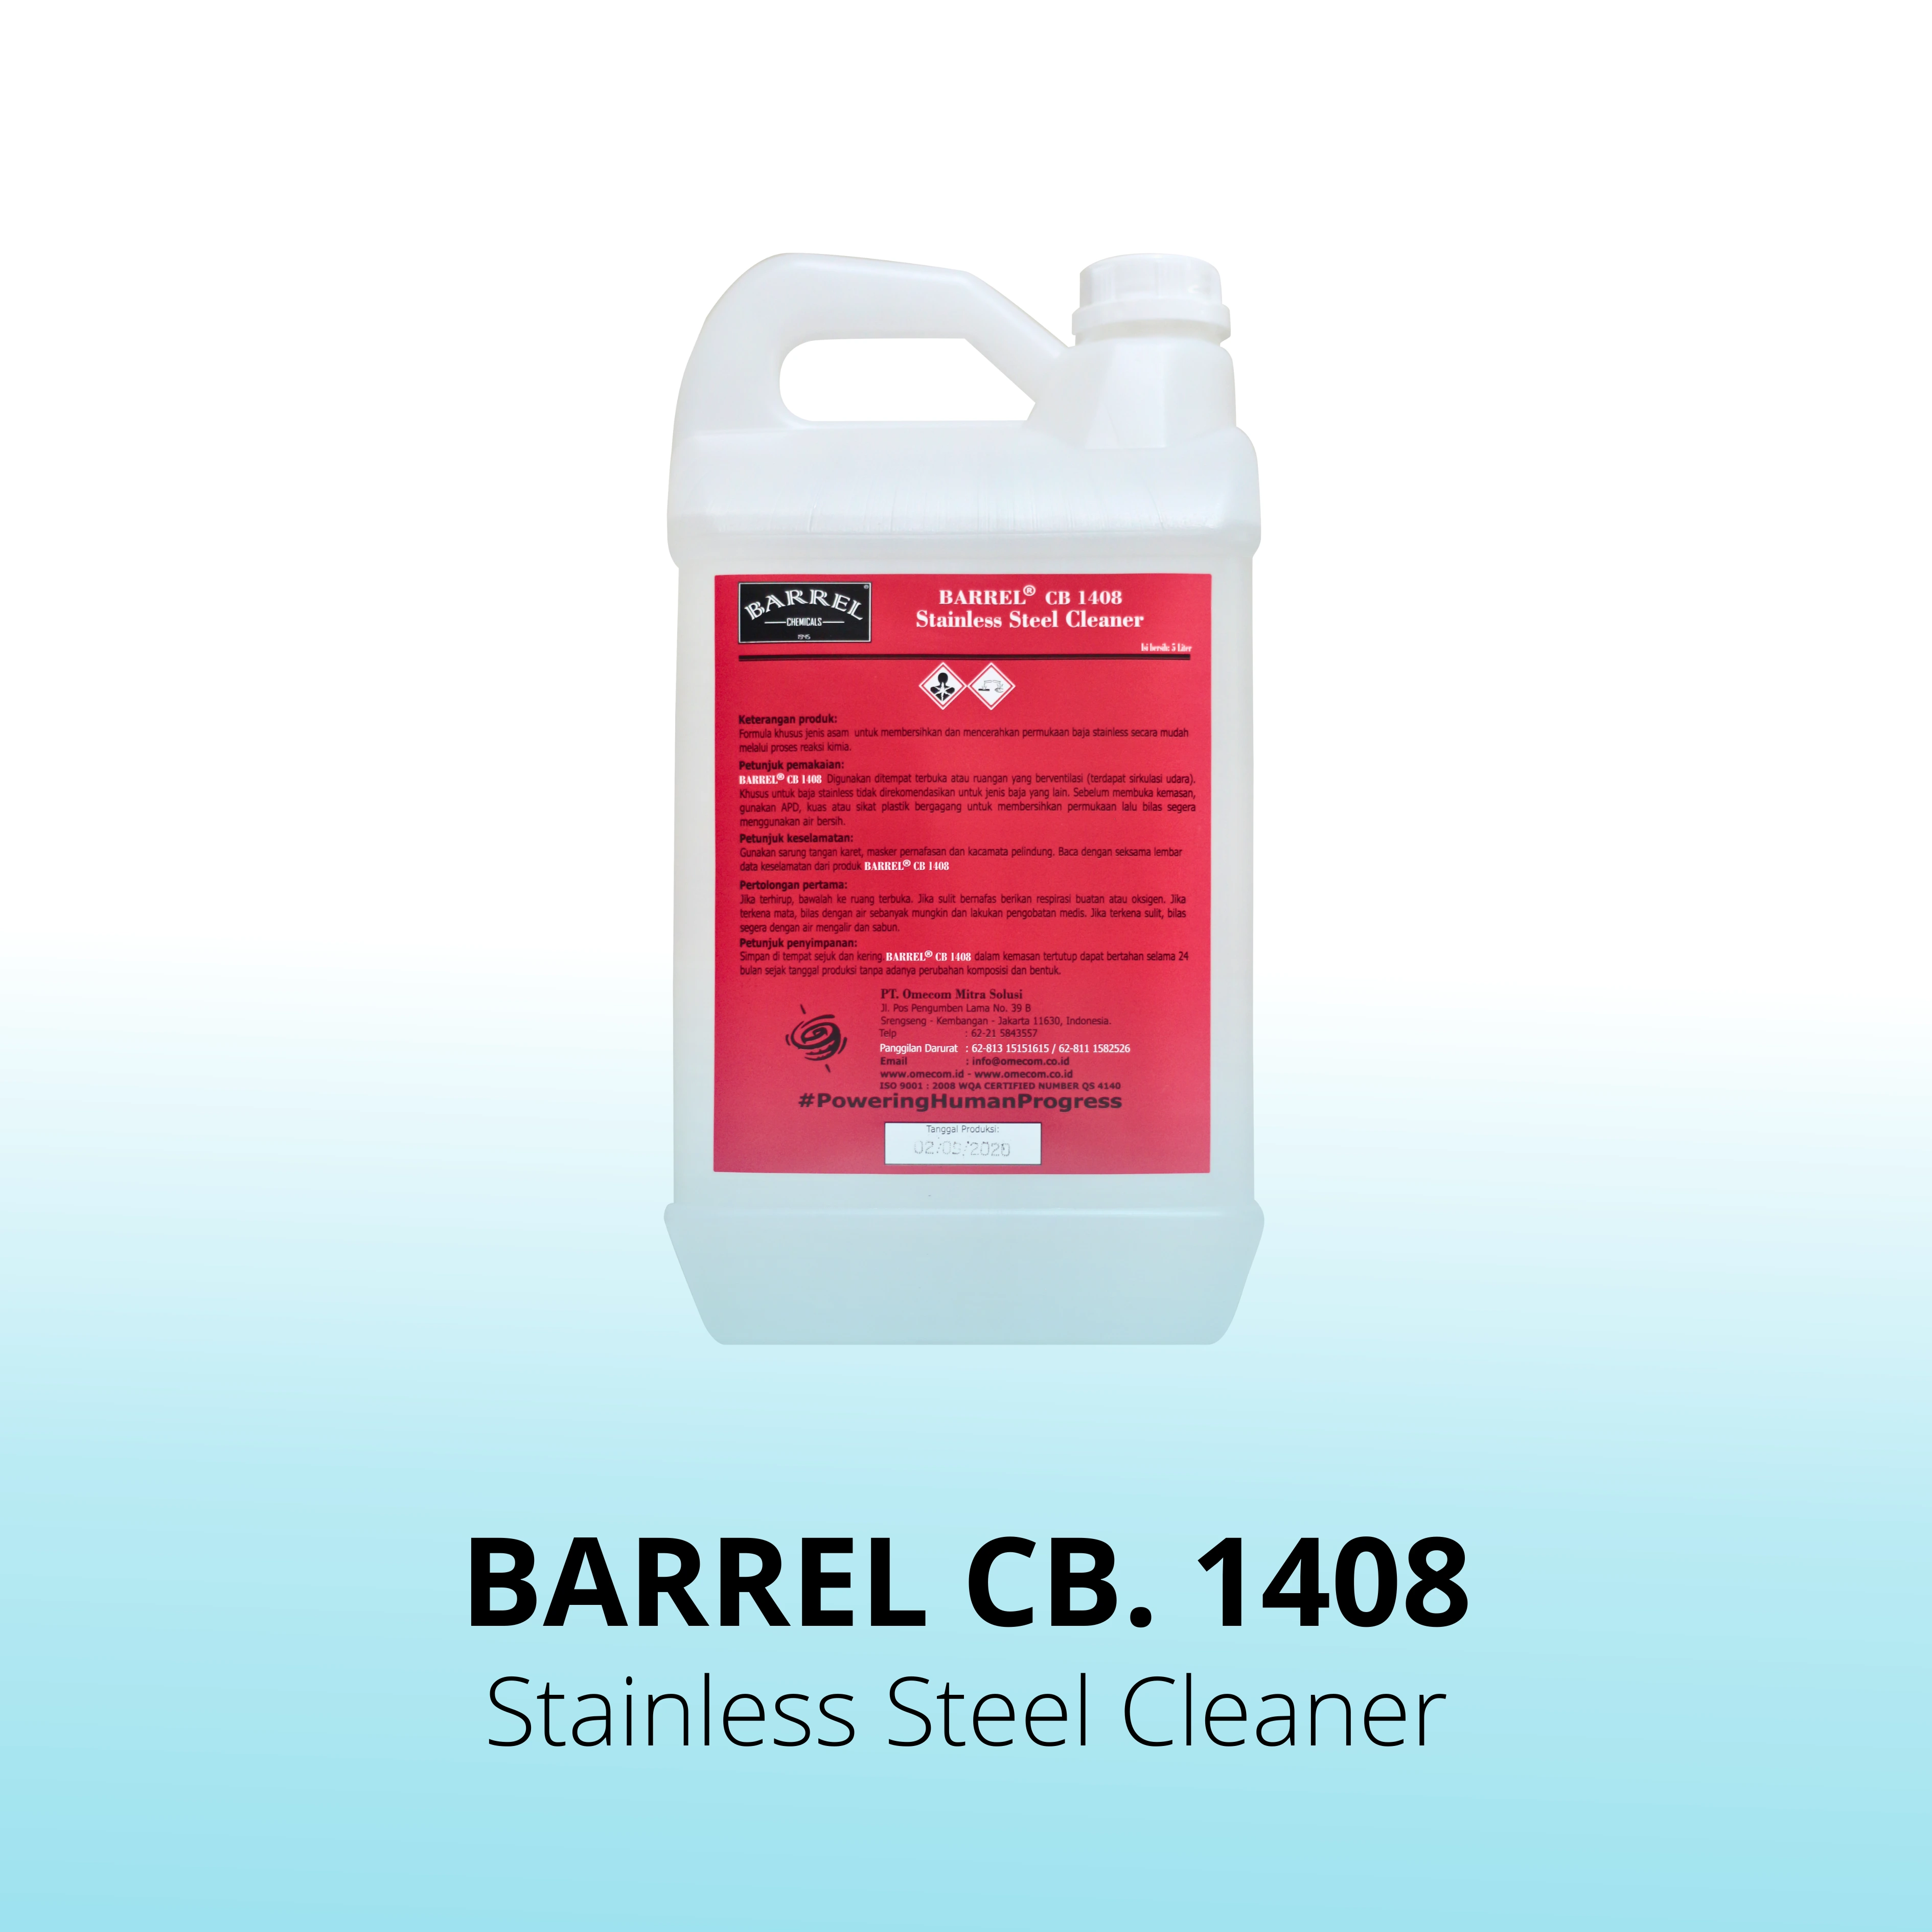 Barrel CB. 1408